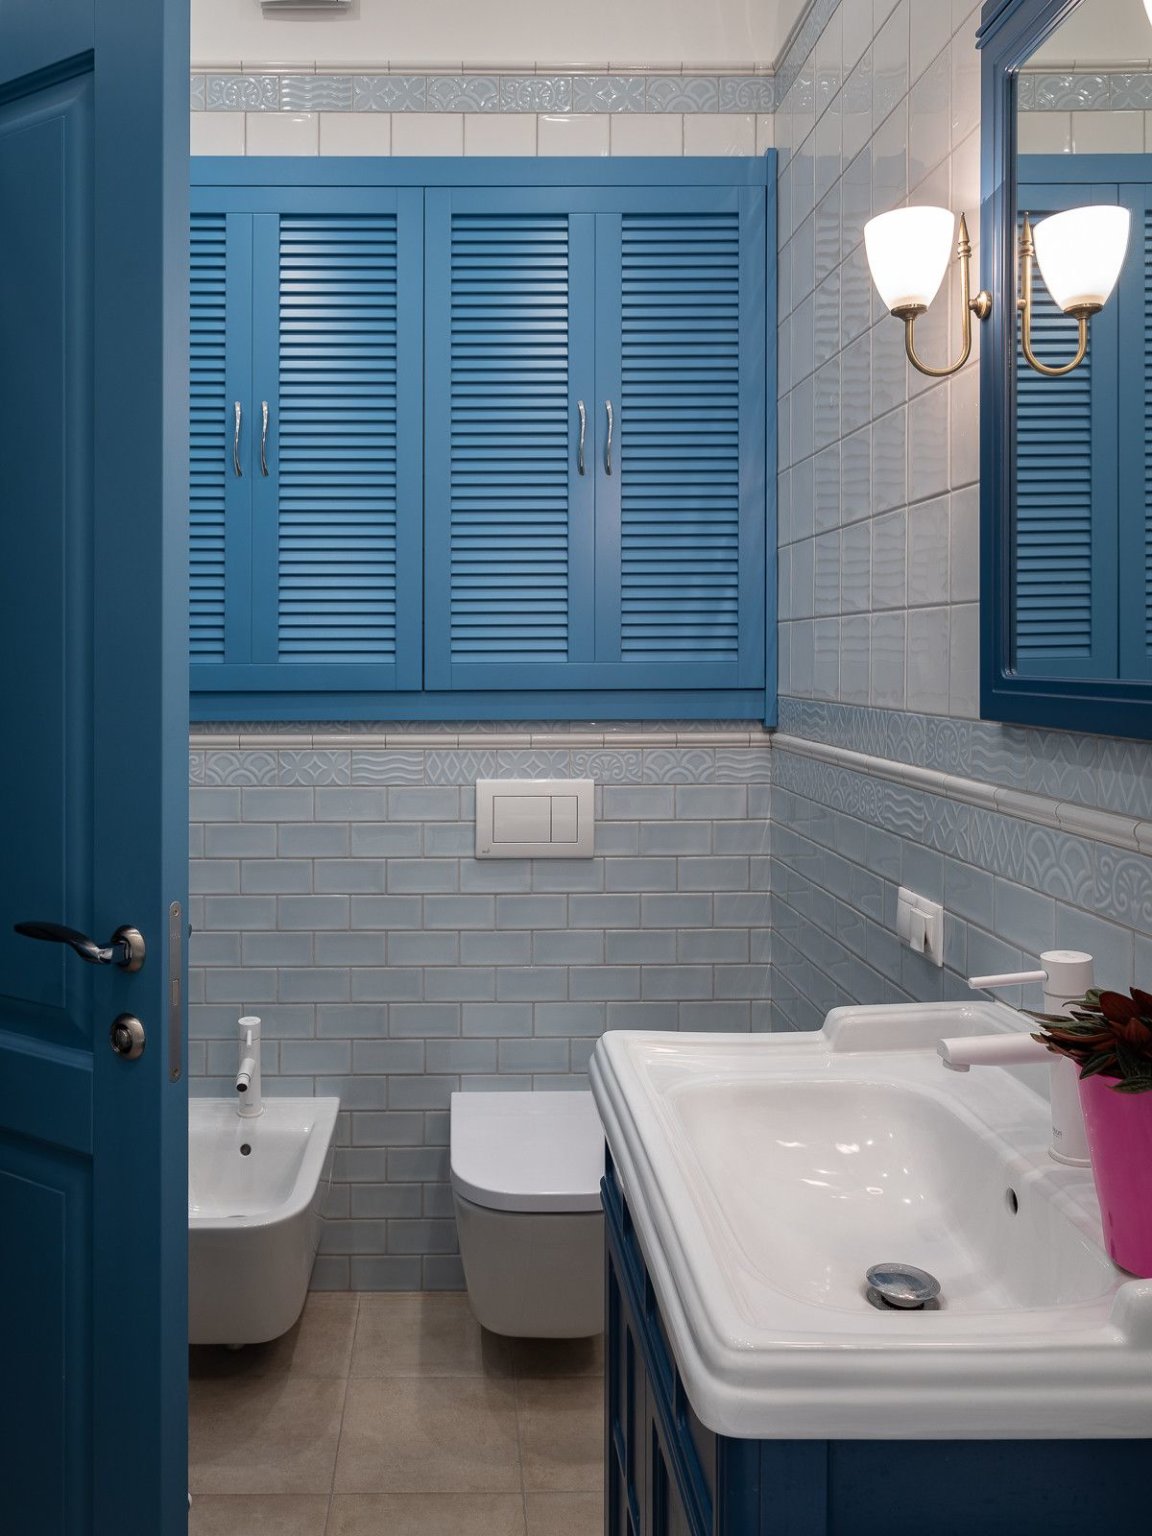 hình ảnh phòng tắm nhỏ mang hơi hướng cổ điển với cửa vào, cửa sổ, tủ đồ màu xanh